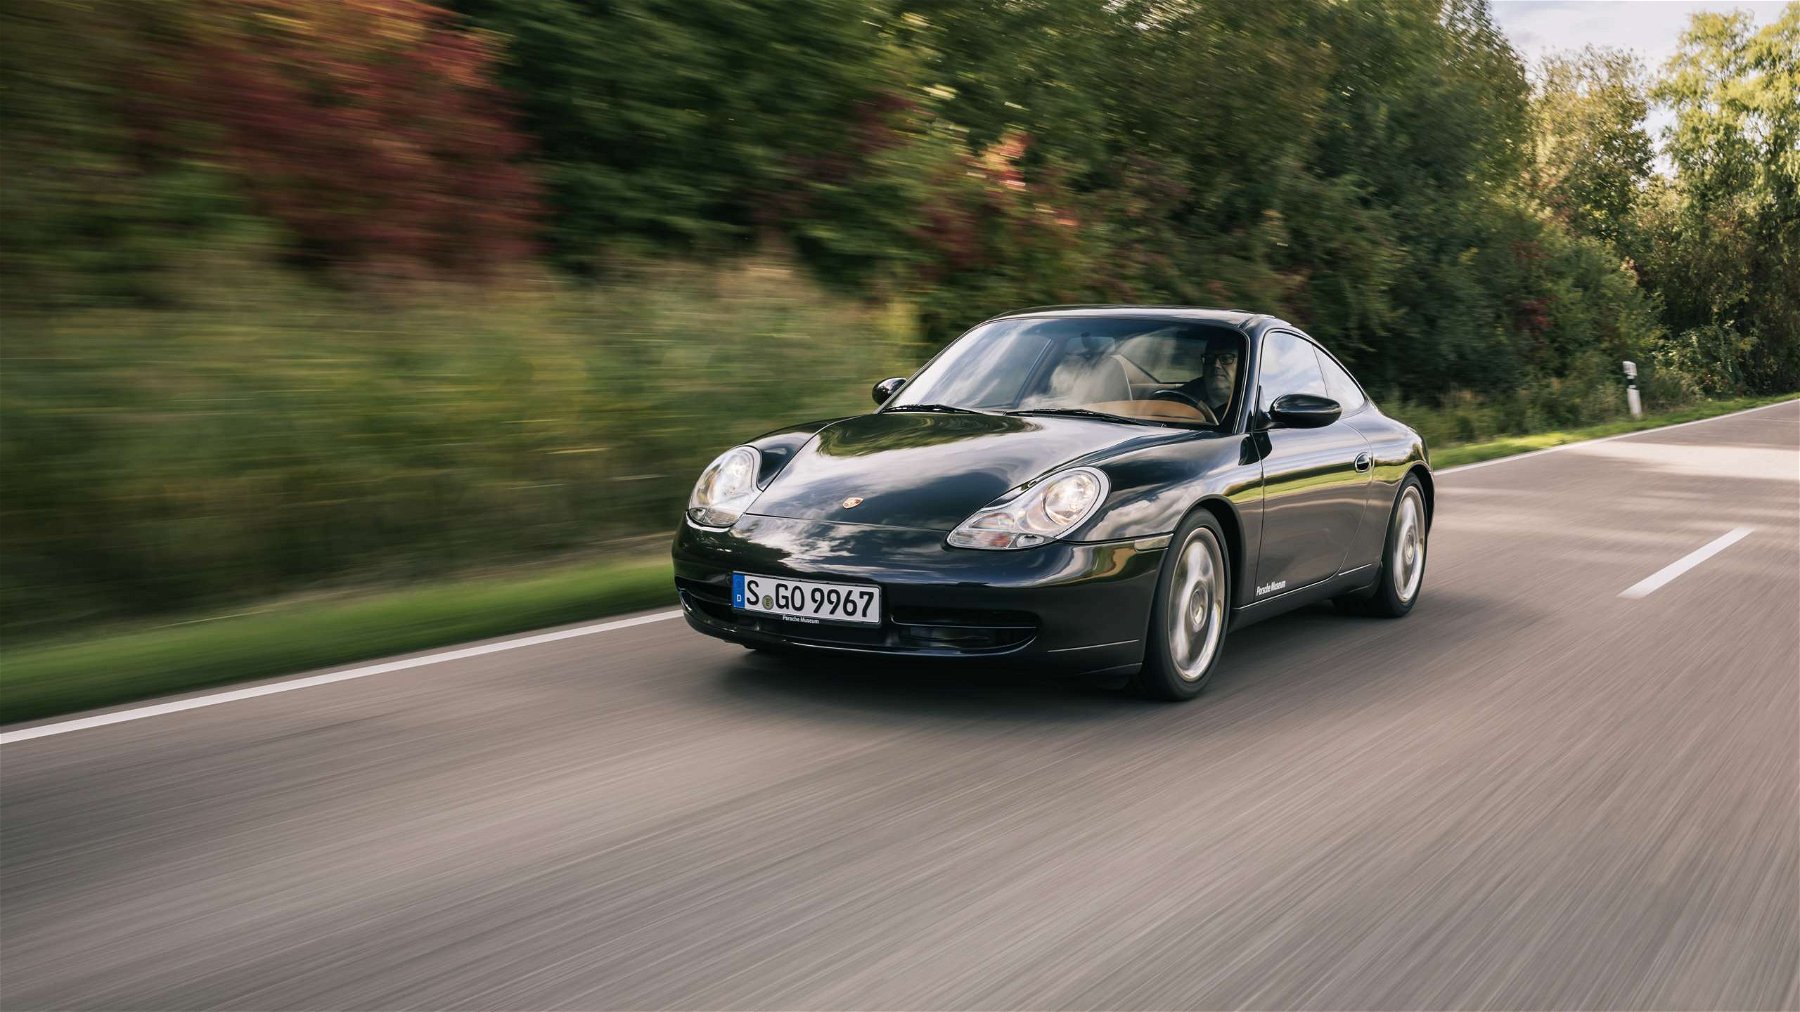 Porsche 911 Turbo S still defines the spirit of the company